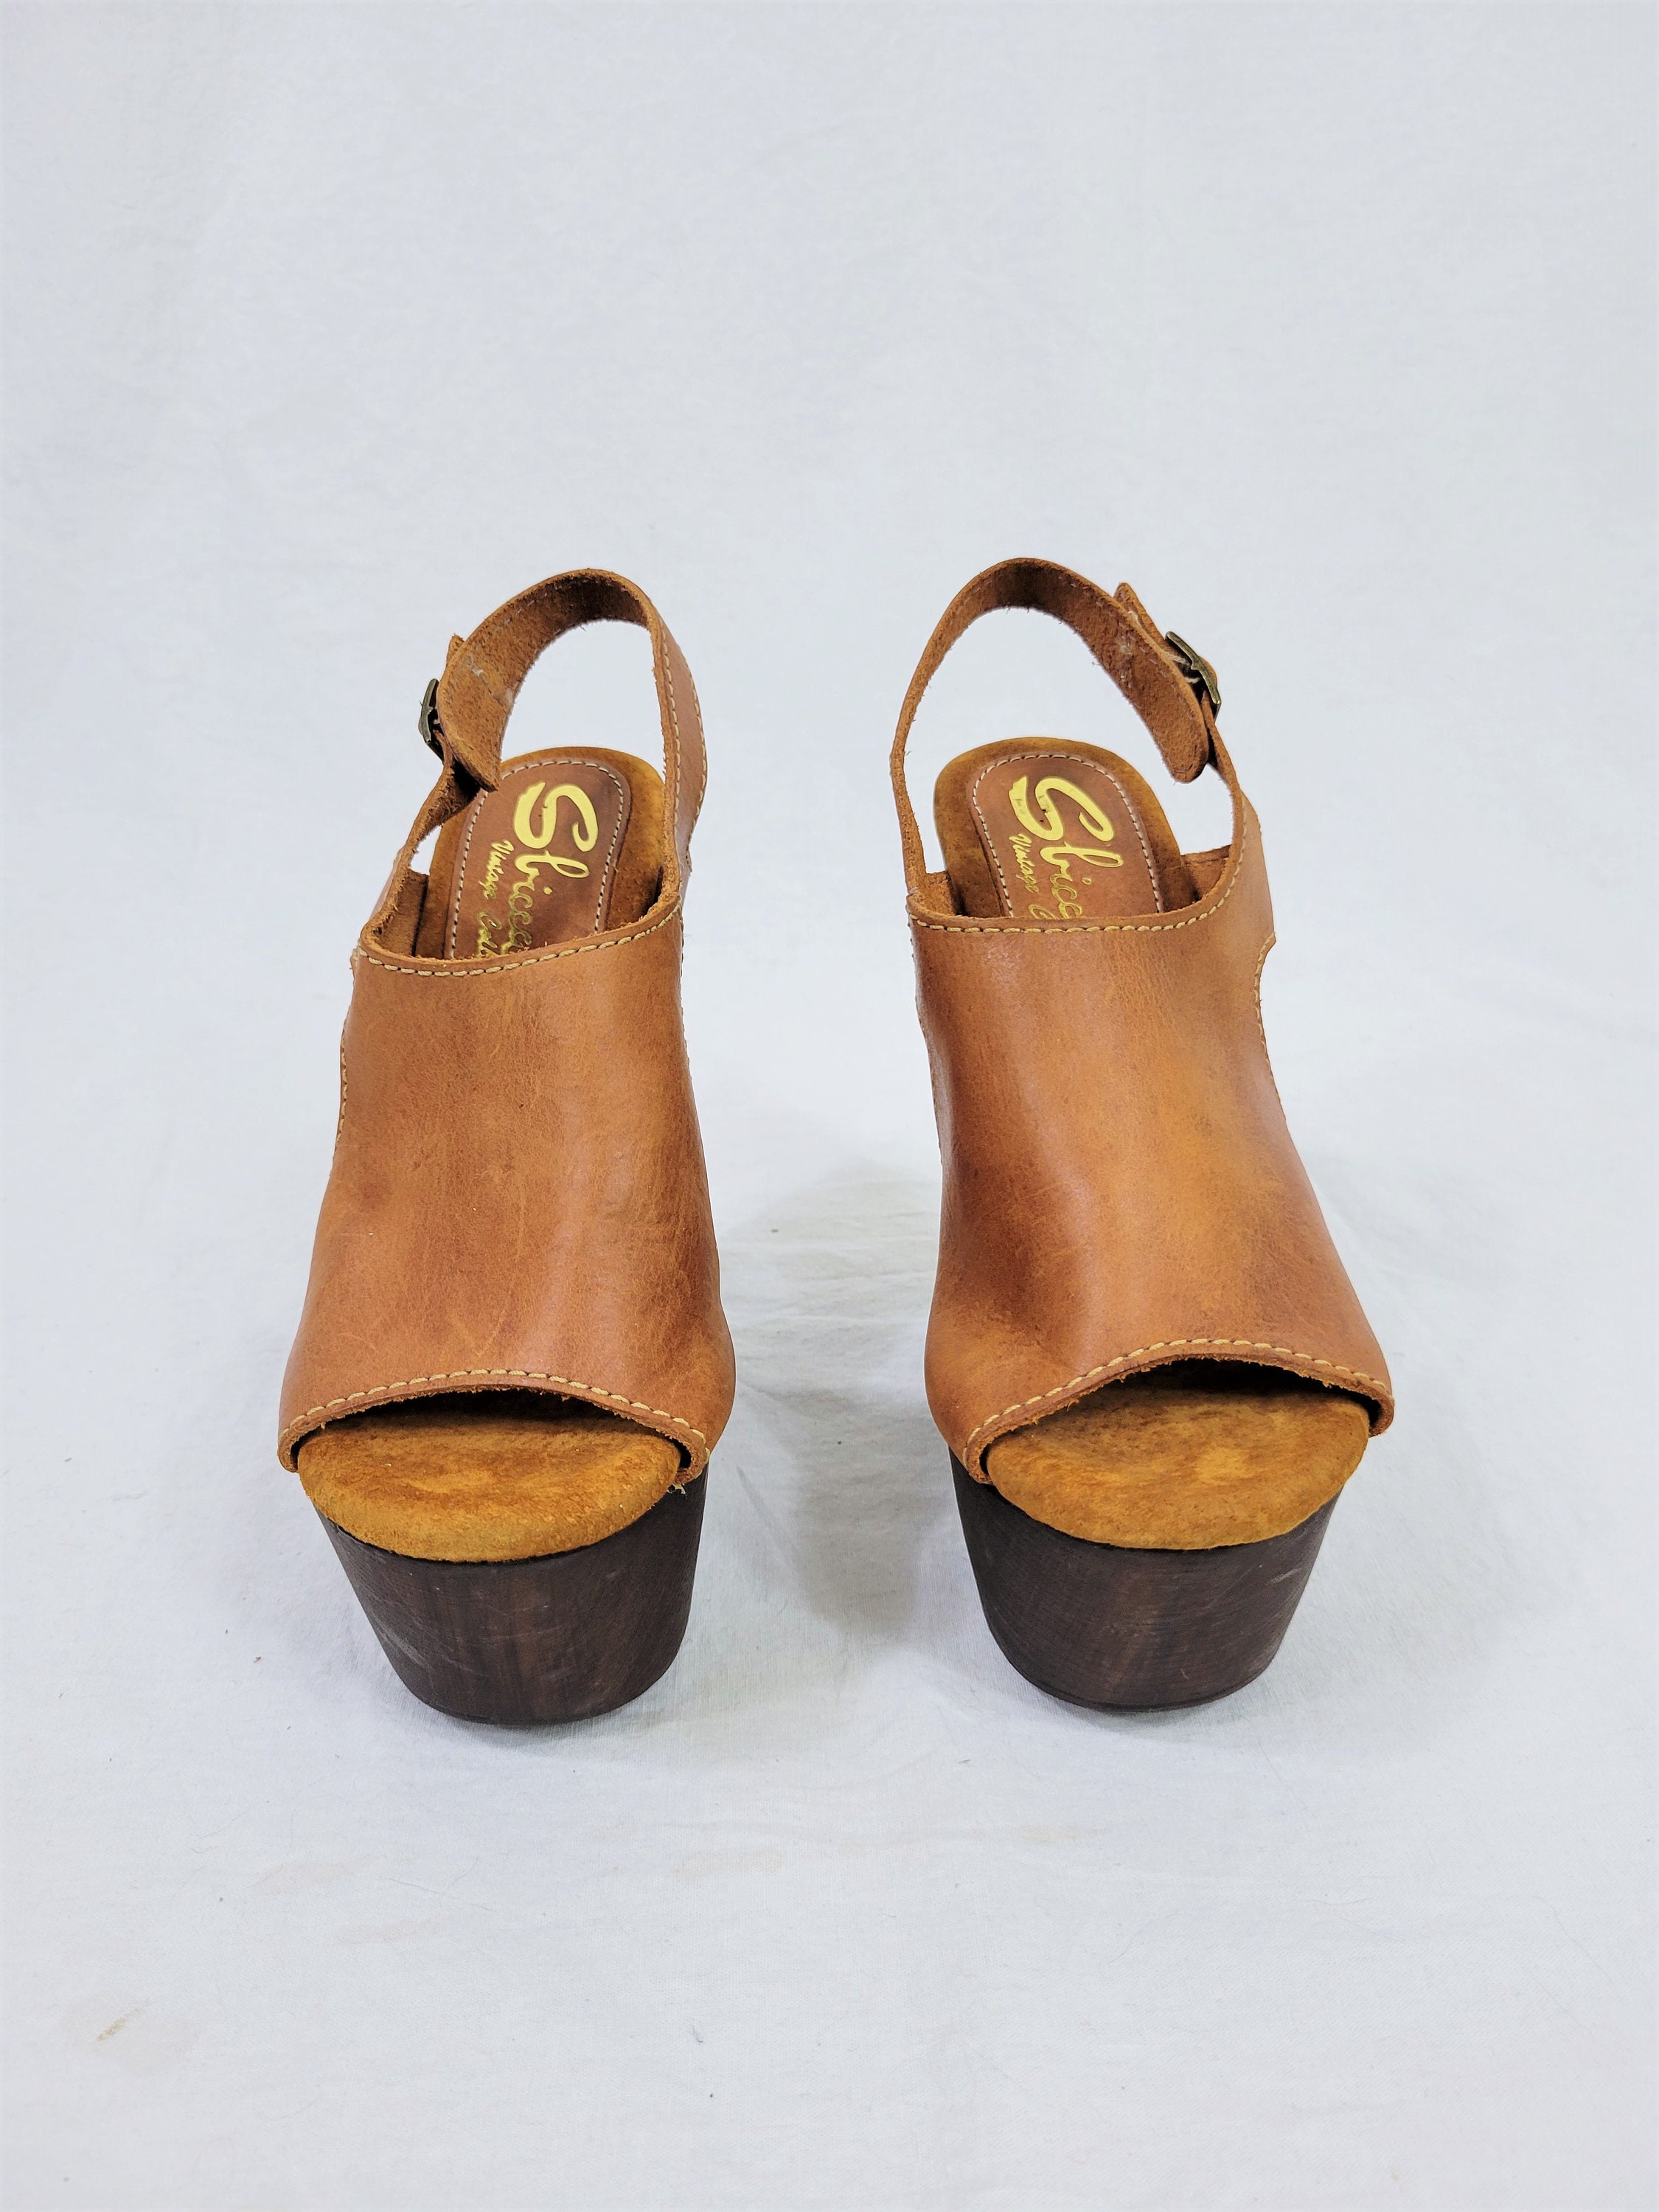 Sbicca Brown Leather Platform Wood Sole Sandals I Vintage | Etsy